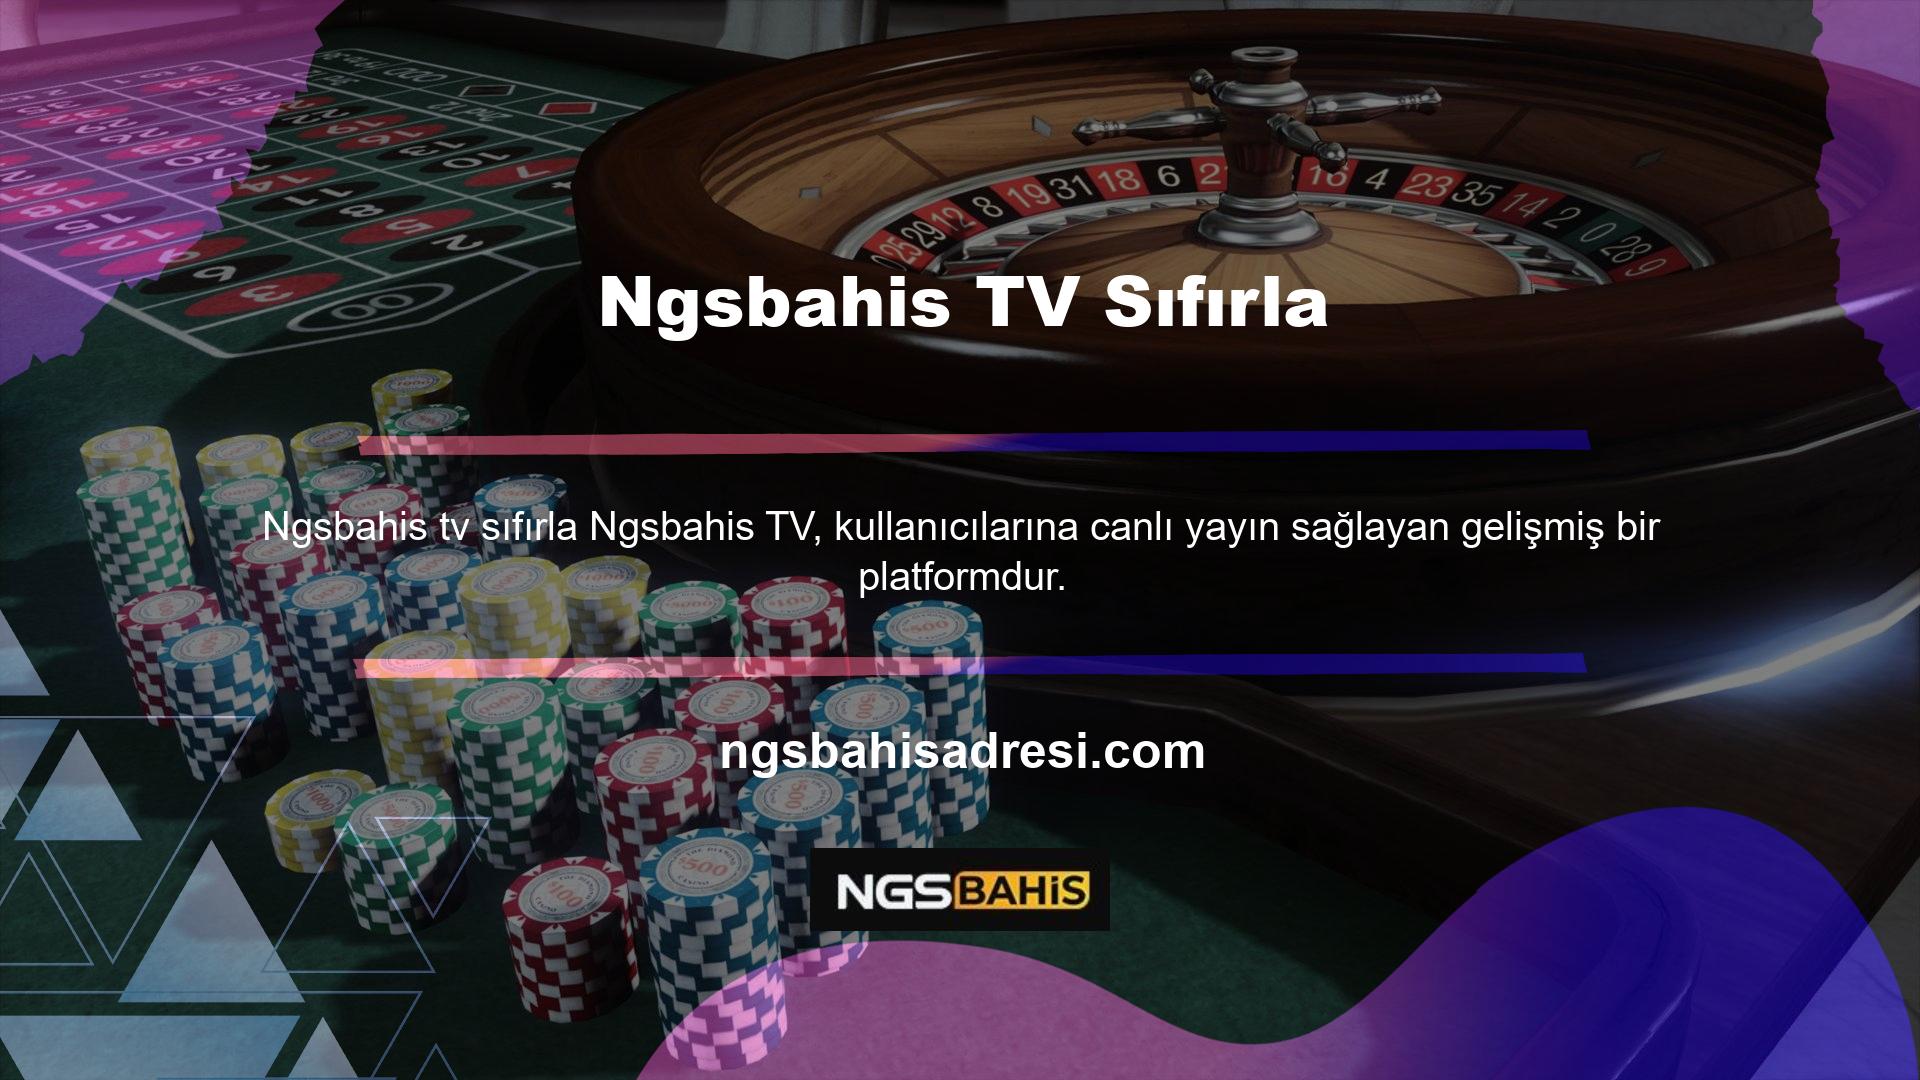 TV kanalında oyun yayınları, oyun özetleri, haberler, canlı casino yayınları, Ngsbahis TV, canlı oyun izleme, sıfırlamalar ve daha fazlası gibi birçok hizmet sunulmaktadır